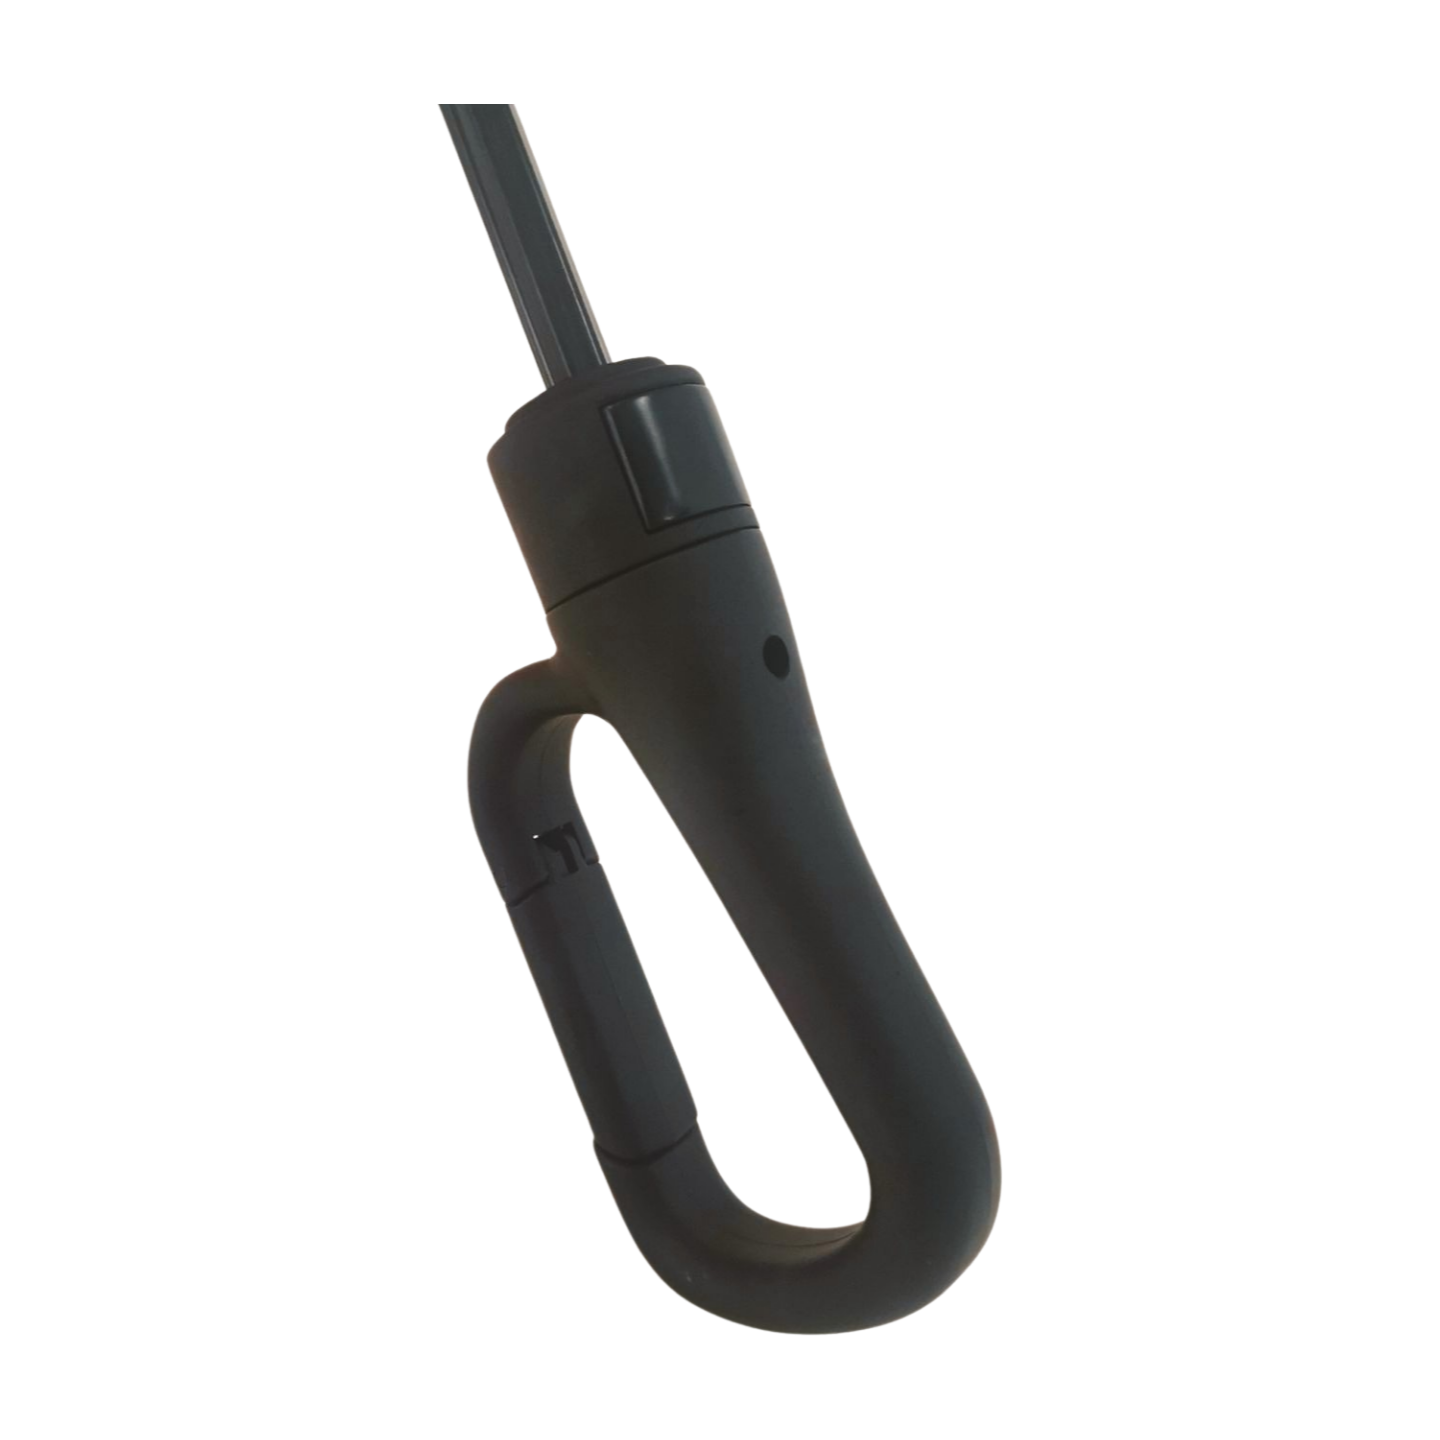 https://www.hodaumbrella.com/two-fold-umbre…th-hook-handle-product/